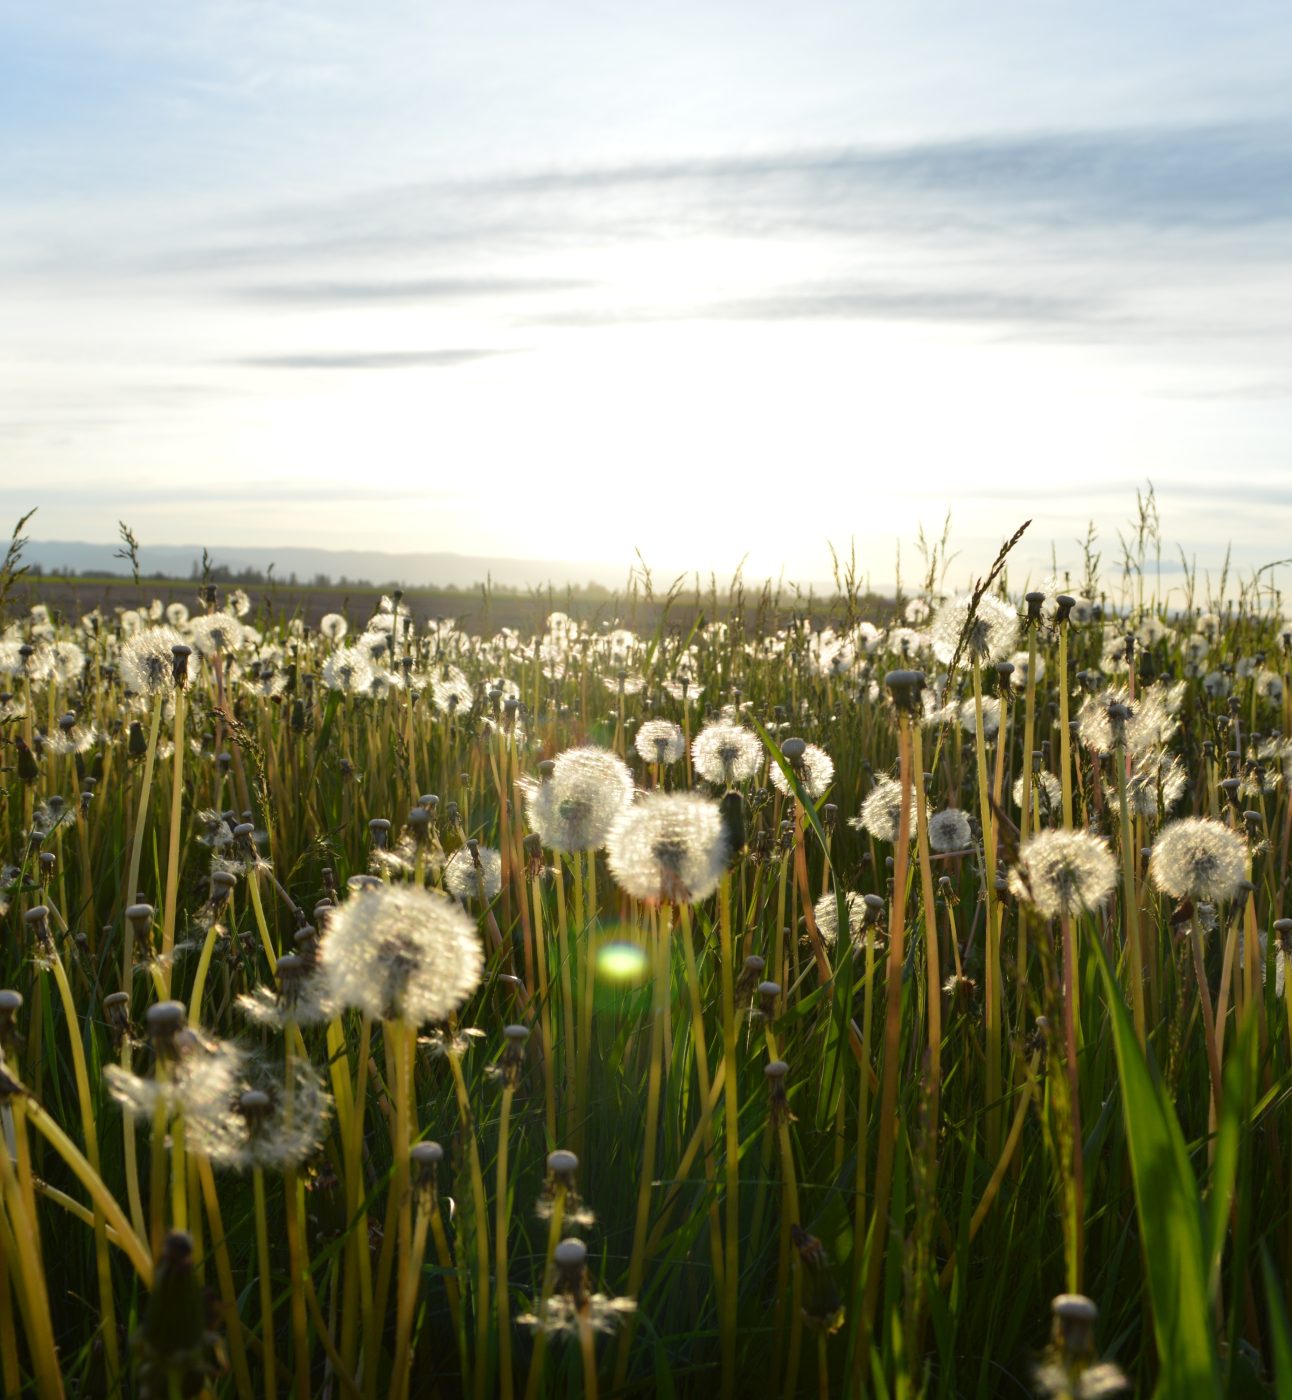 Dandelions in a sunlit field